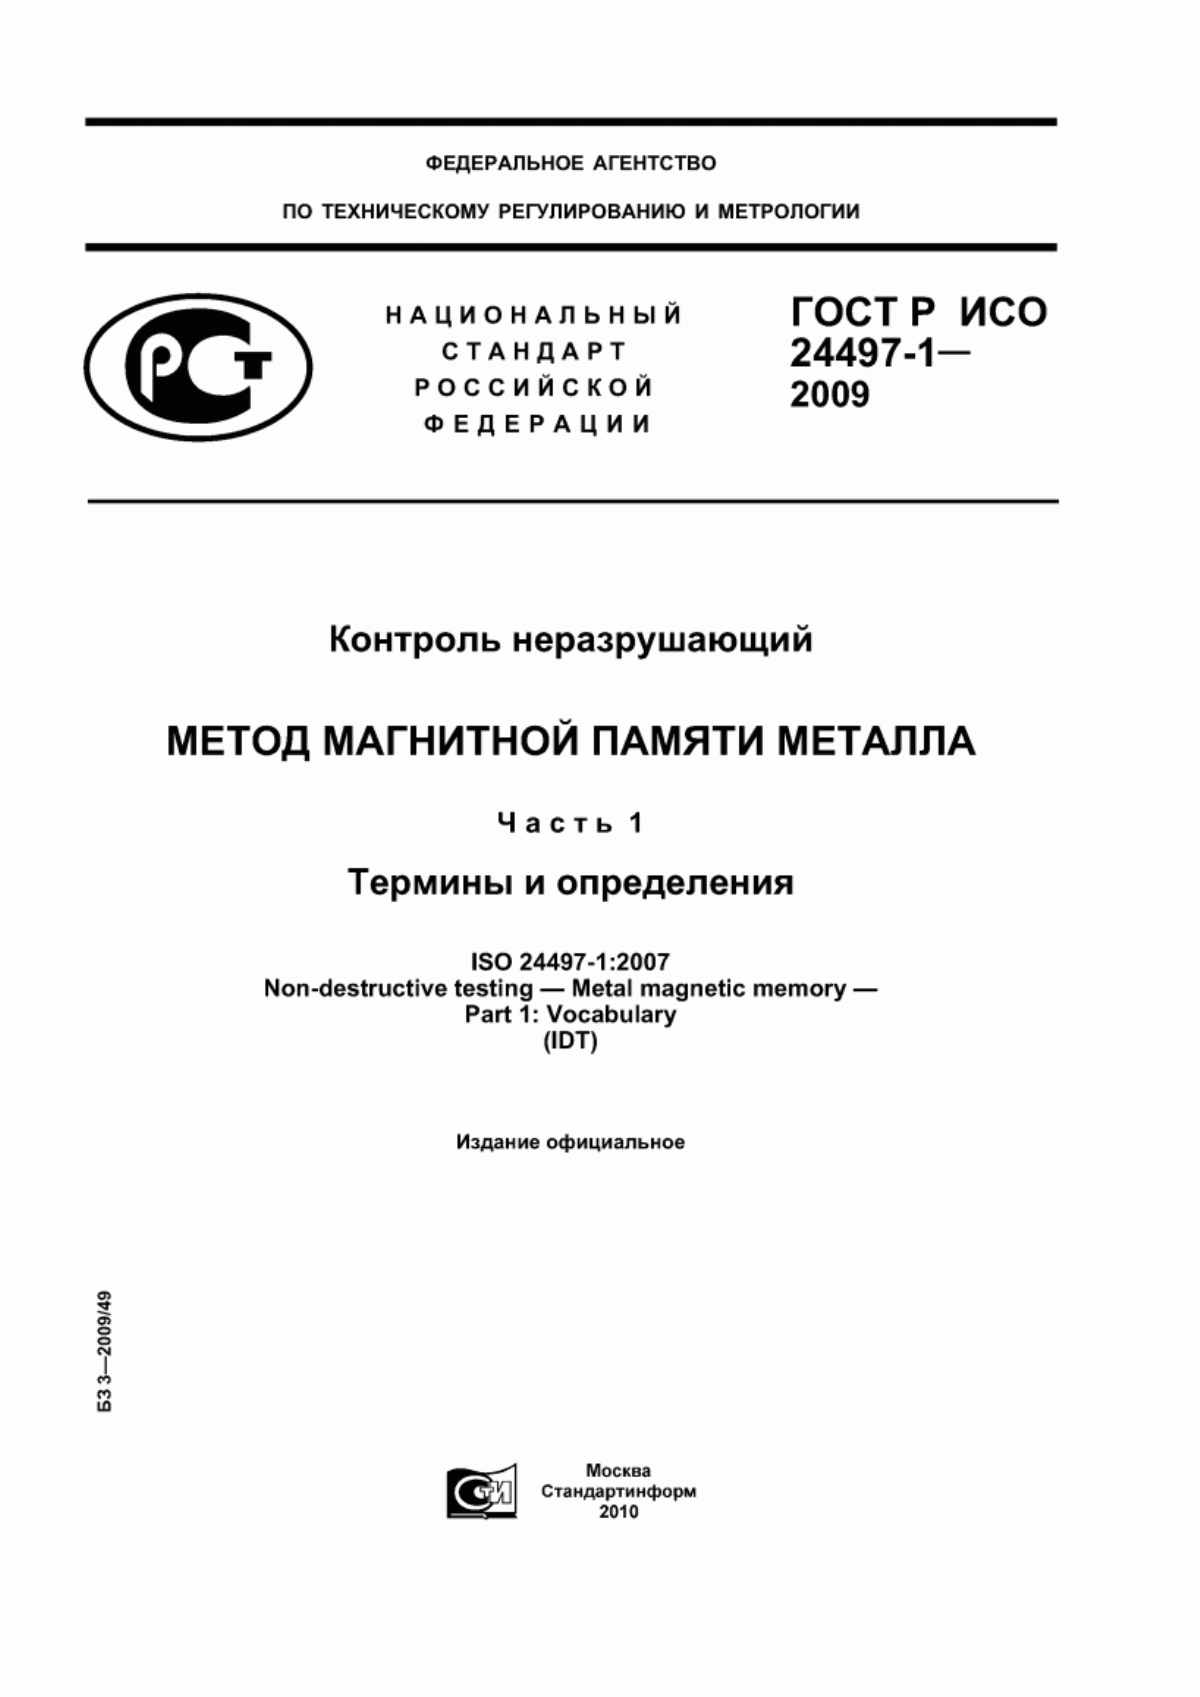 ГОСТ Р ИСО 24497-1-2009 Контроль неразрушающий. Метод магнитной памяти металла. Часть 1. Термины и определения